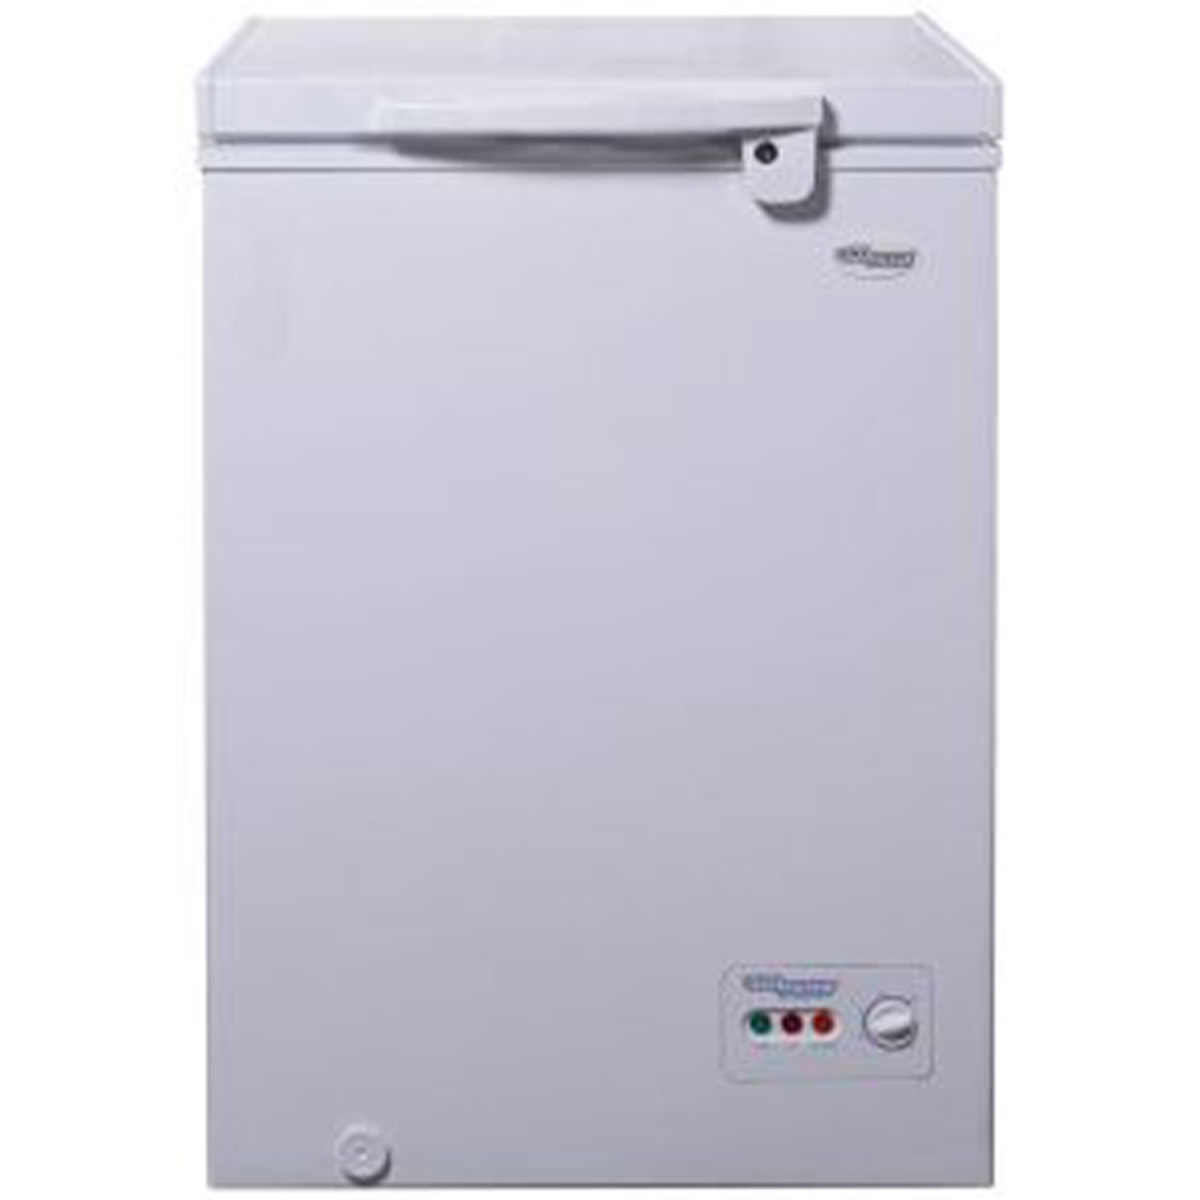 Super General Chest Freezer, 150 L, White, SG F155H